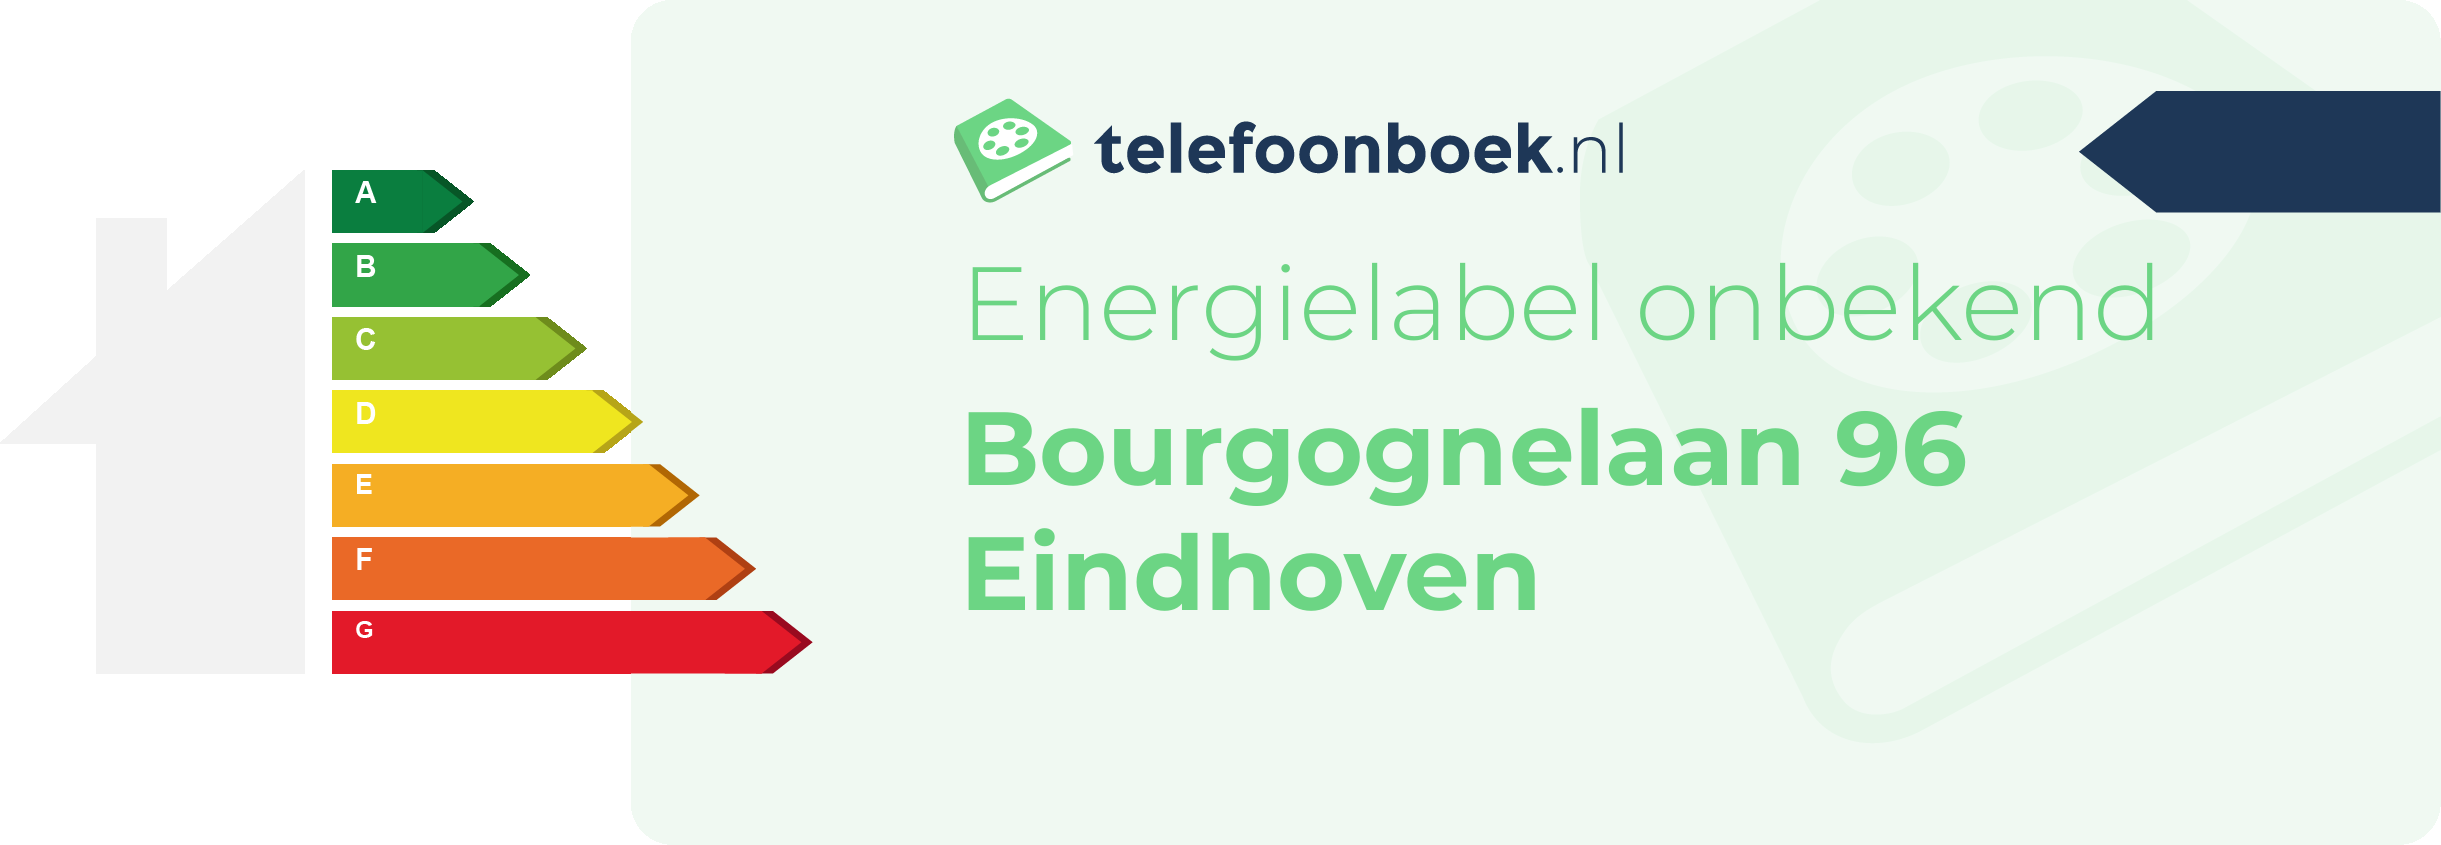 Energielabel Bourgognelaan 96 Eindhoven